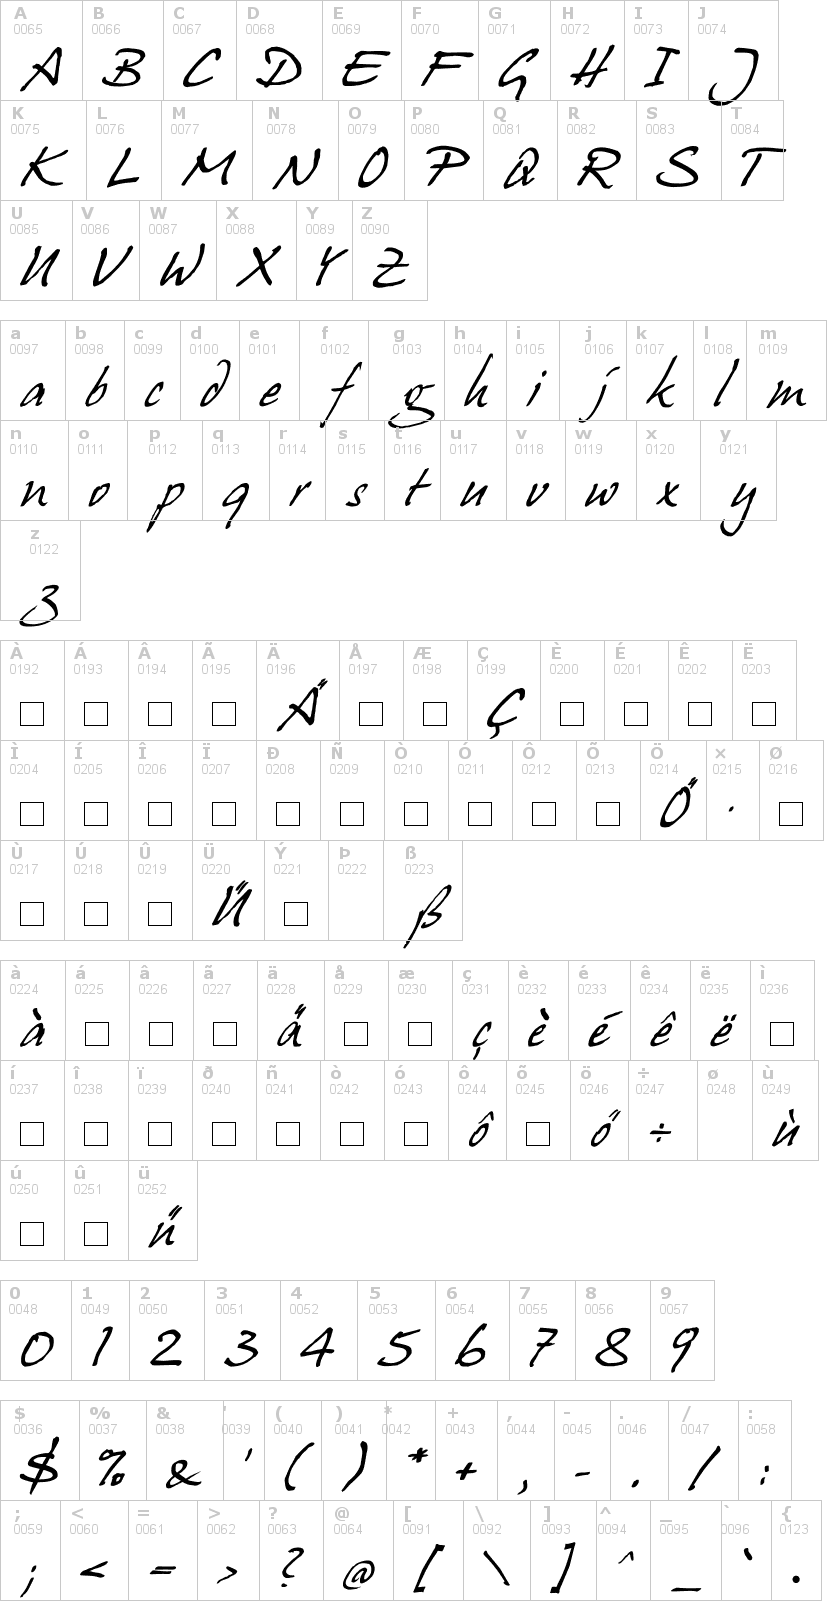 Lettere dell'alfabeto del font hanshand con le quali è possibile realizzare adesivi prespaziati